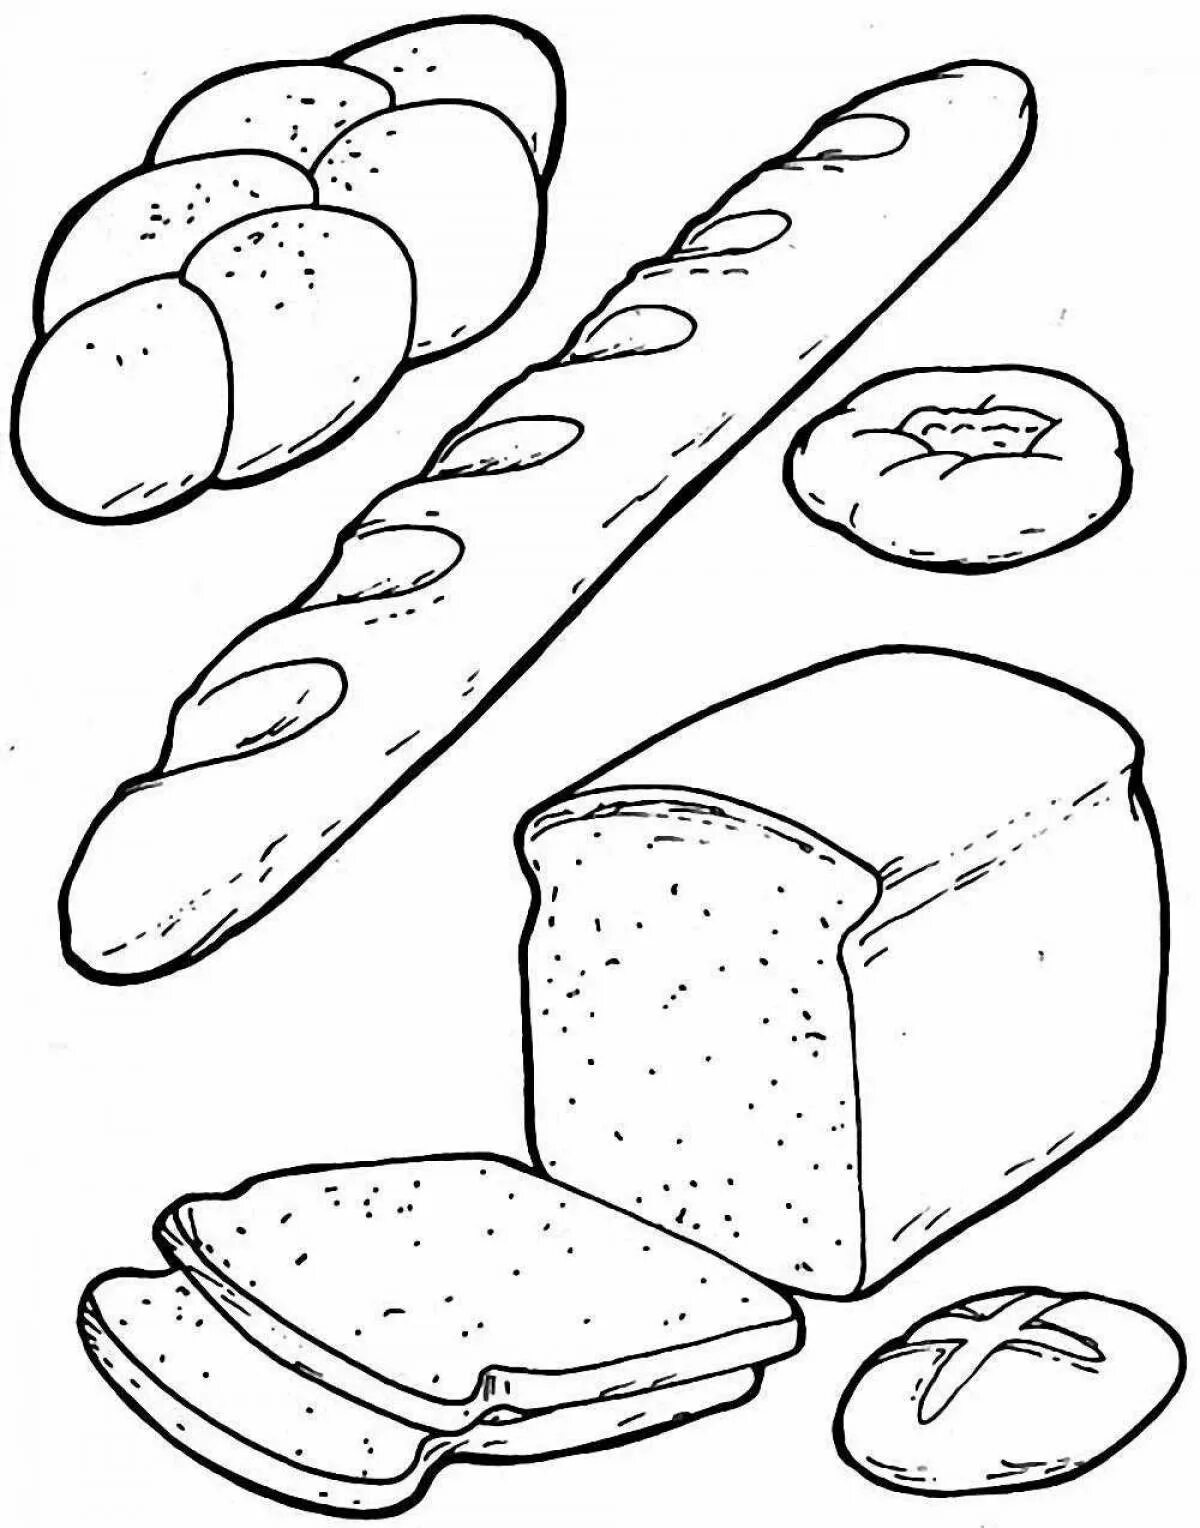 Хаги ваги 3 раскраска. Хлеб раскраска. Хлеб раскраска для детей. Раскраска хлебобулочные изделия. Раскраска продукты питания для детей.